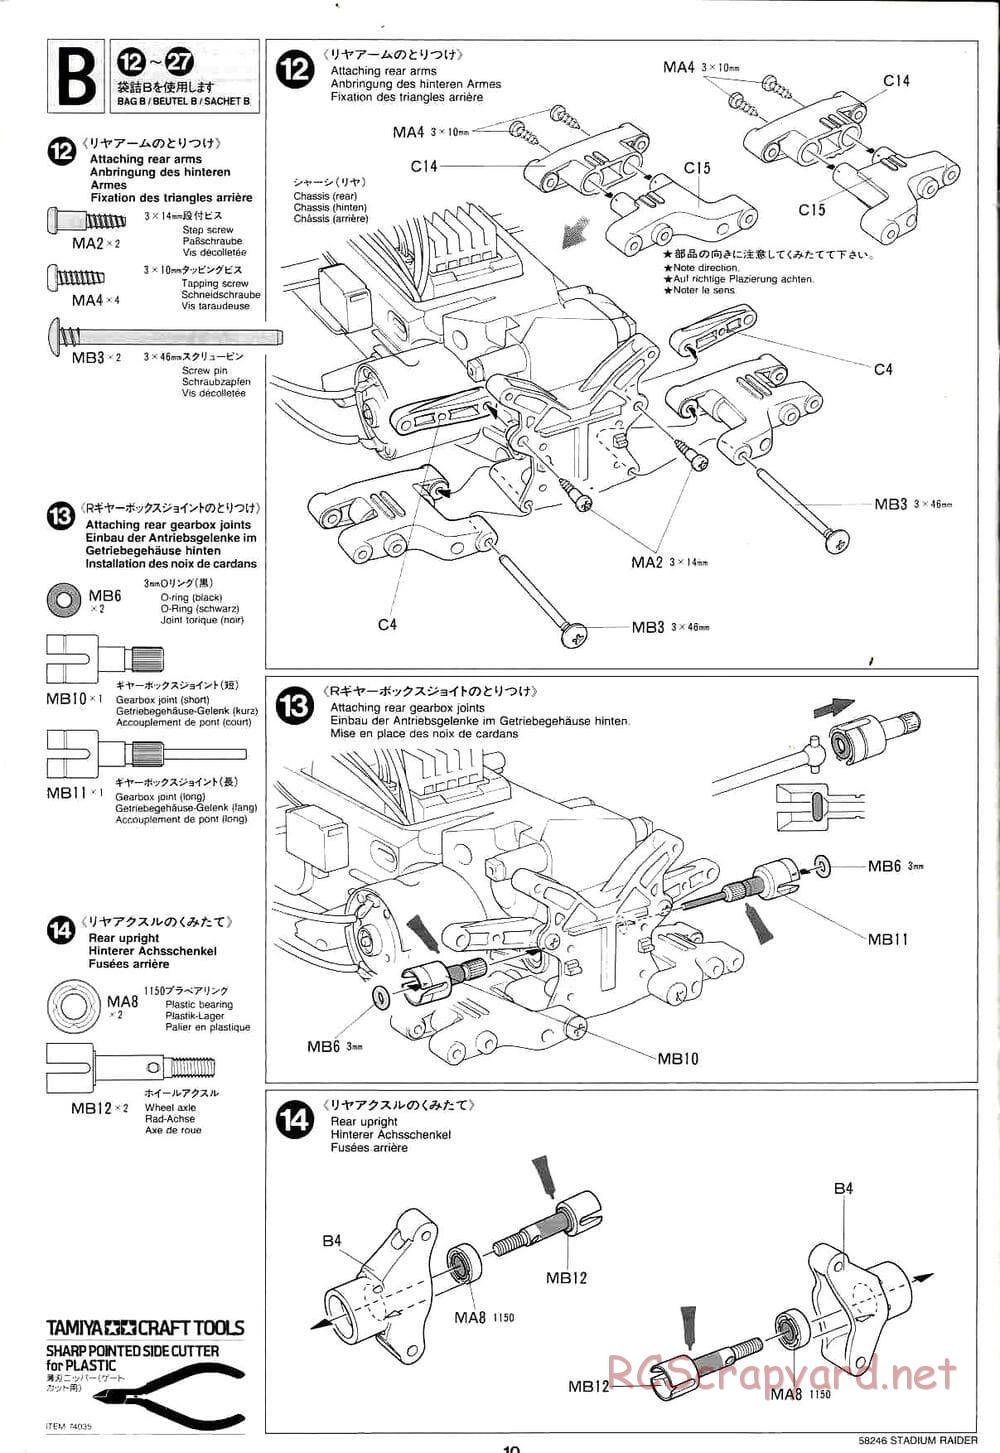 Tamiya - Stadium Raider - TL-01 Chassis - Manual - Page 10